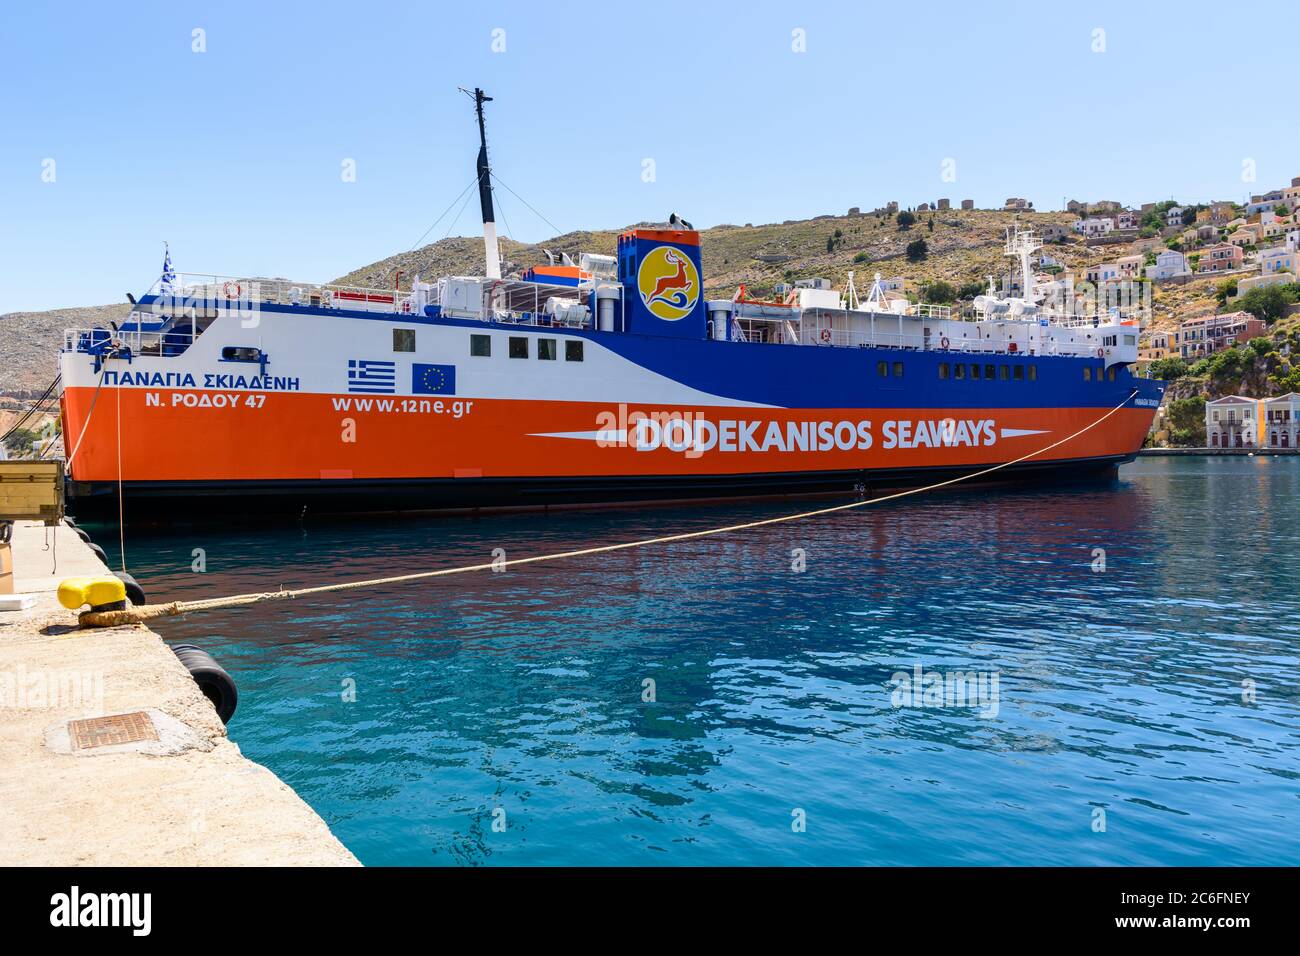 SYMI, GRIECHENLAND - 15. Mai 2018: Panagia Skiadeni Fähre im Hafen von Gialos während der Sommersaison. Symi Island, Griechenland Stockfoto